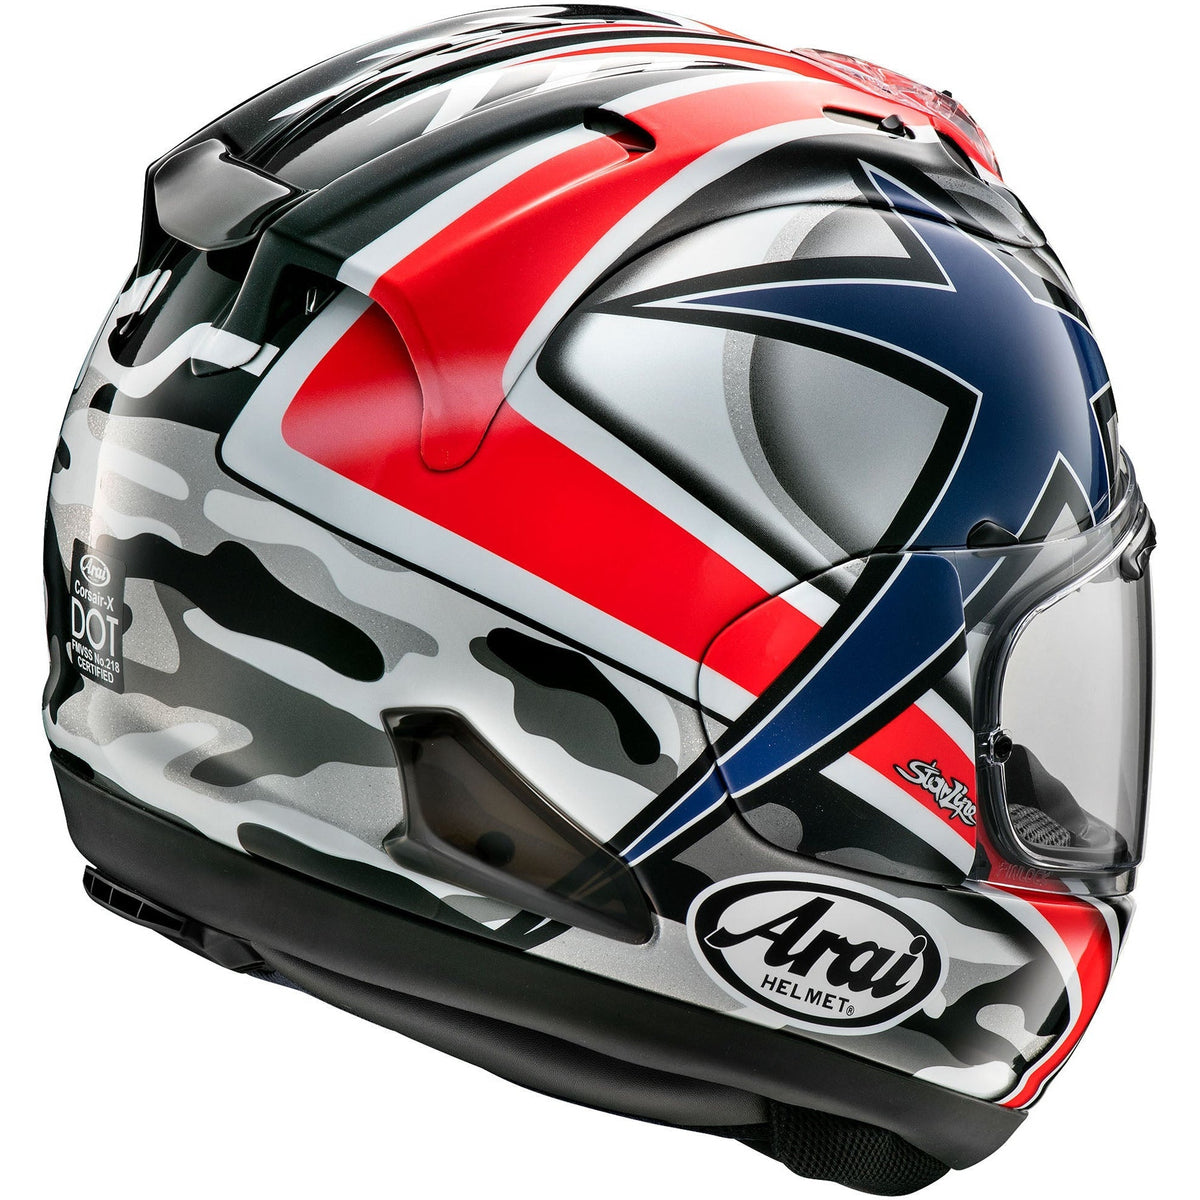 Corsair-X Helmet (Hayden Laguna)